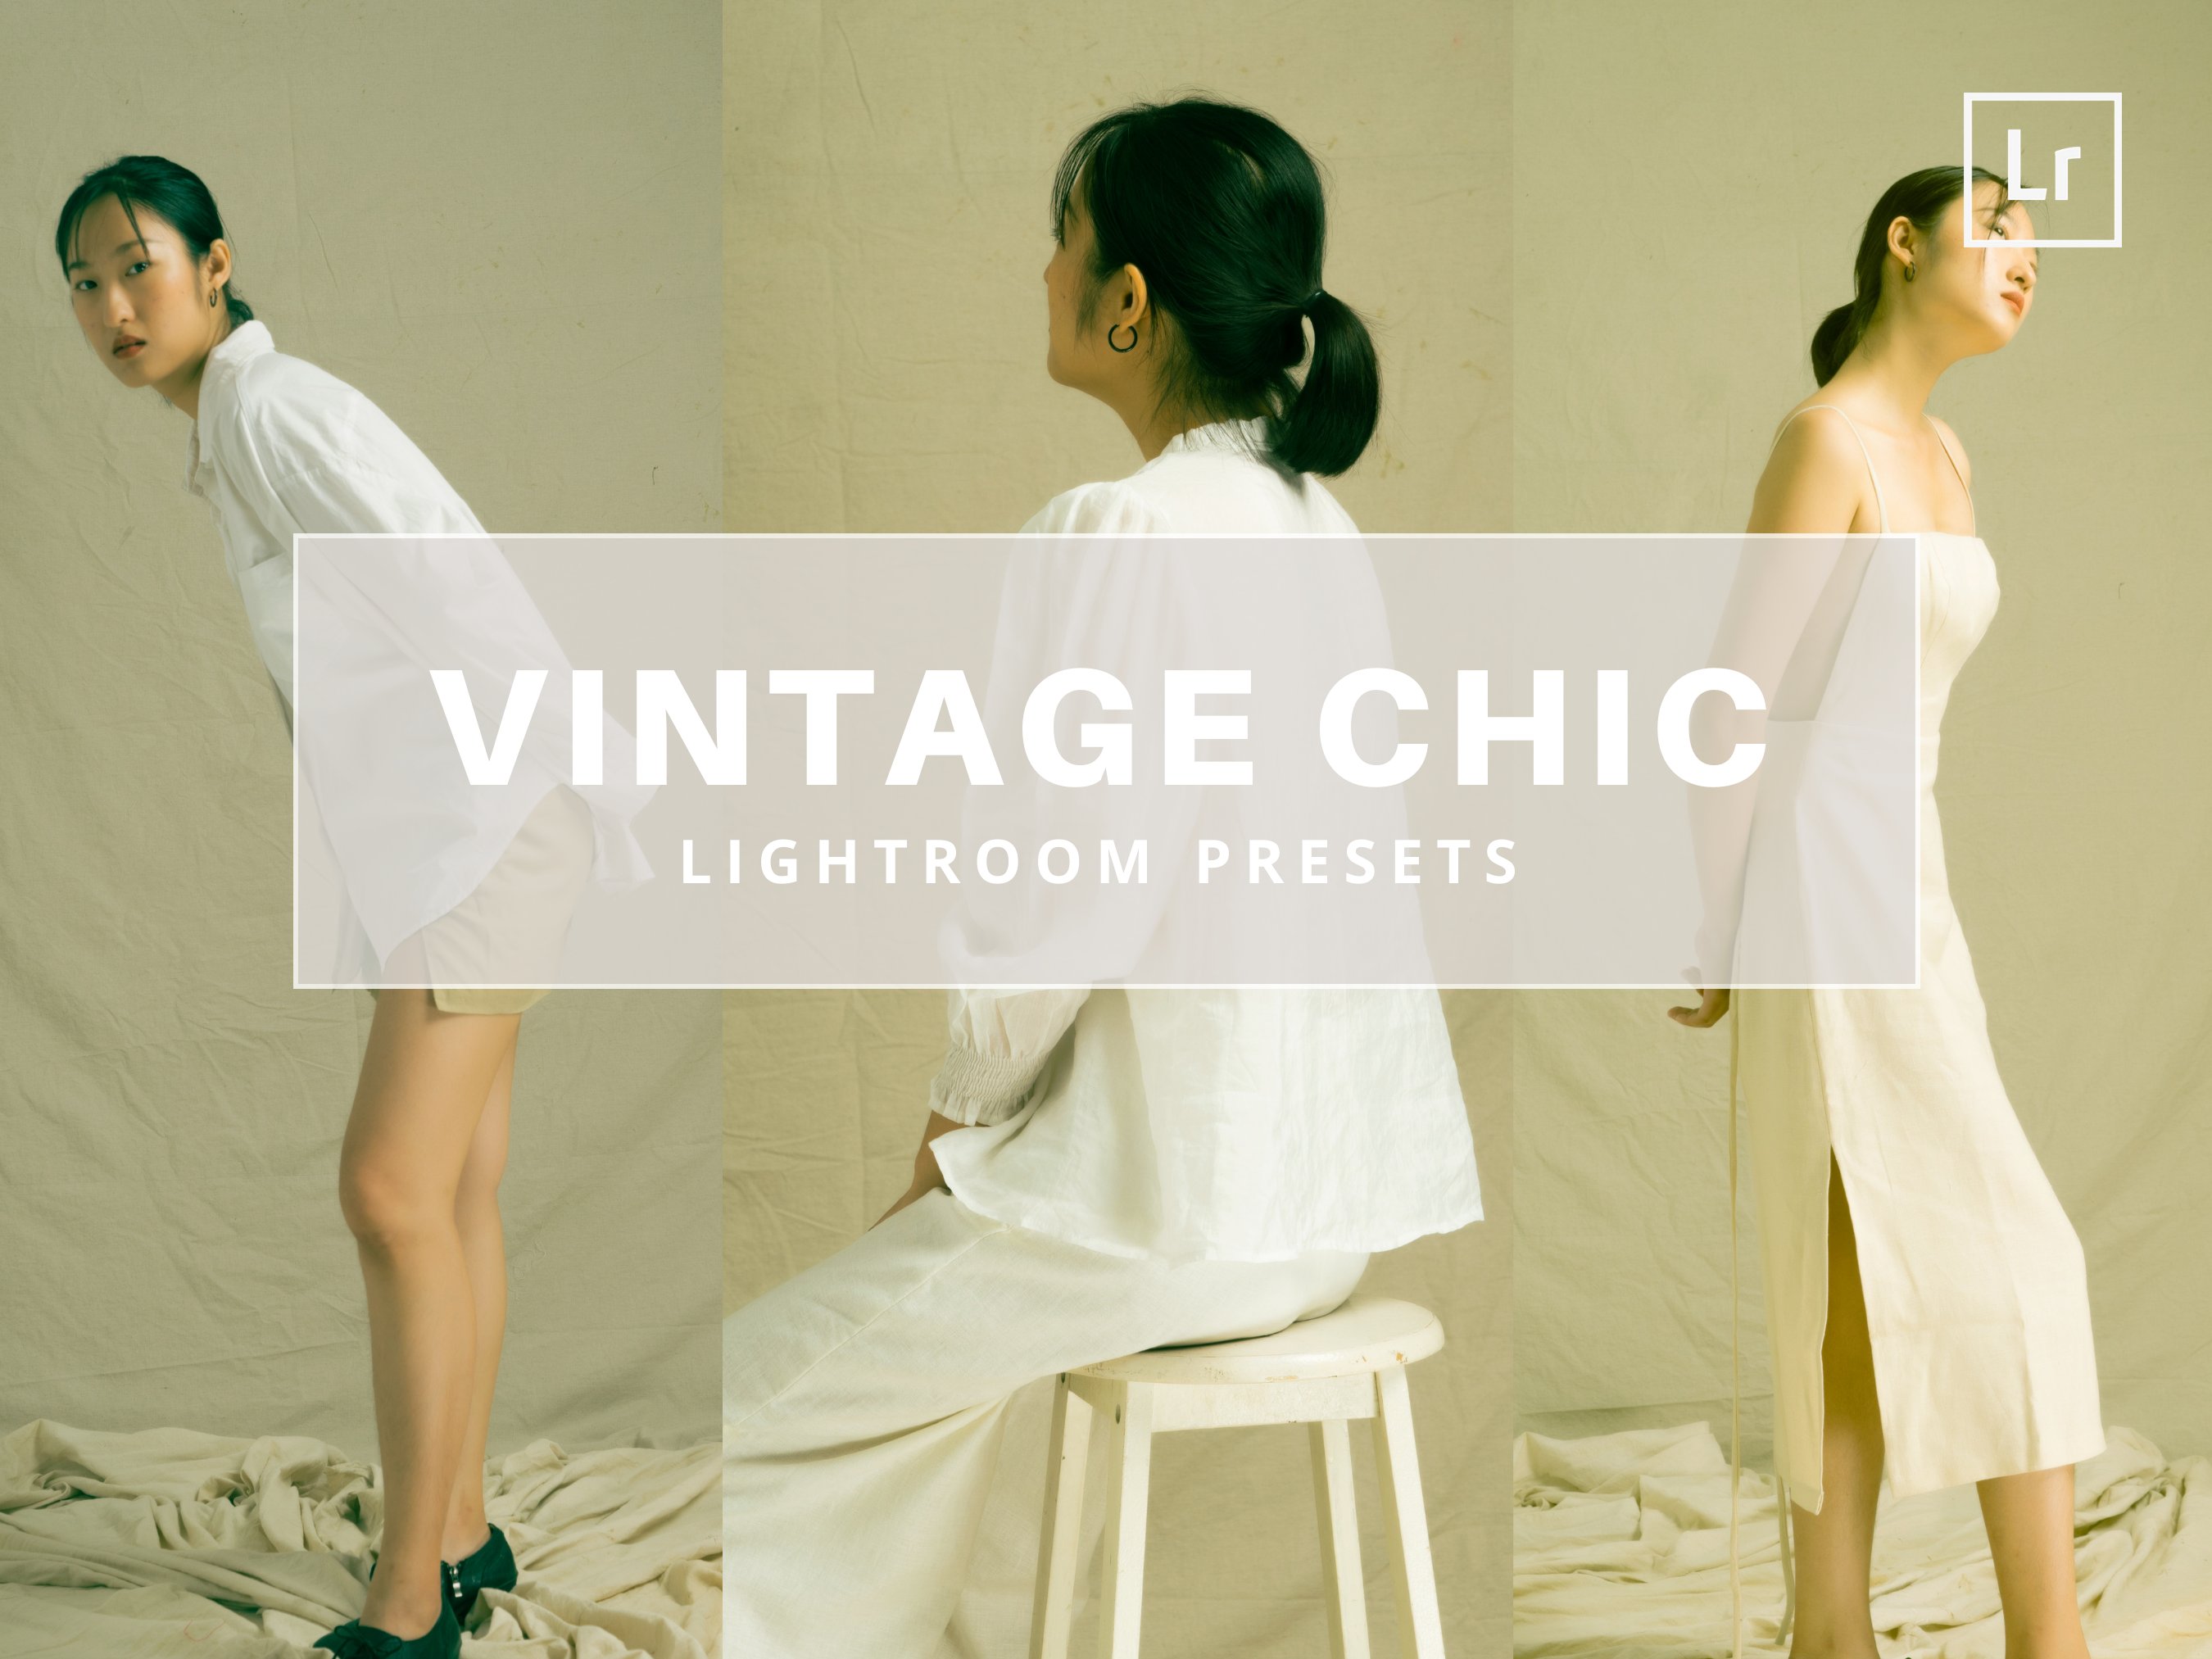 Vintage Chic | Lightroom Presetscover image.